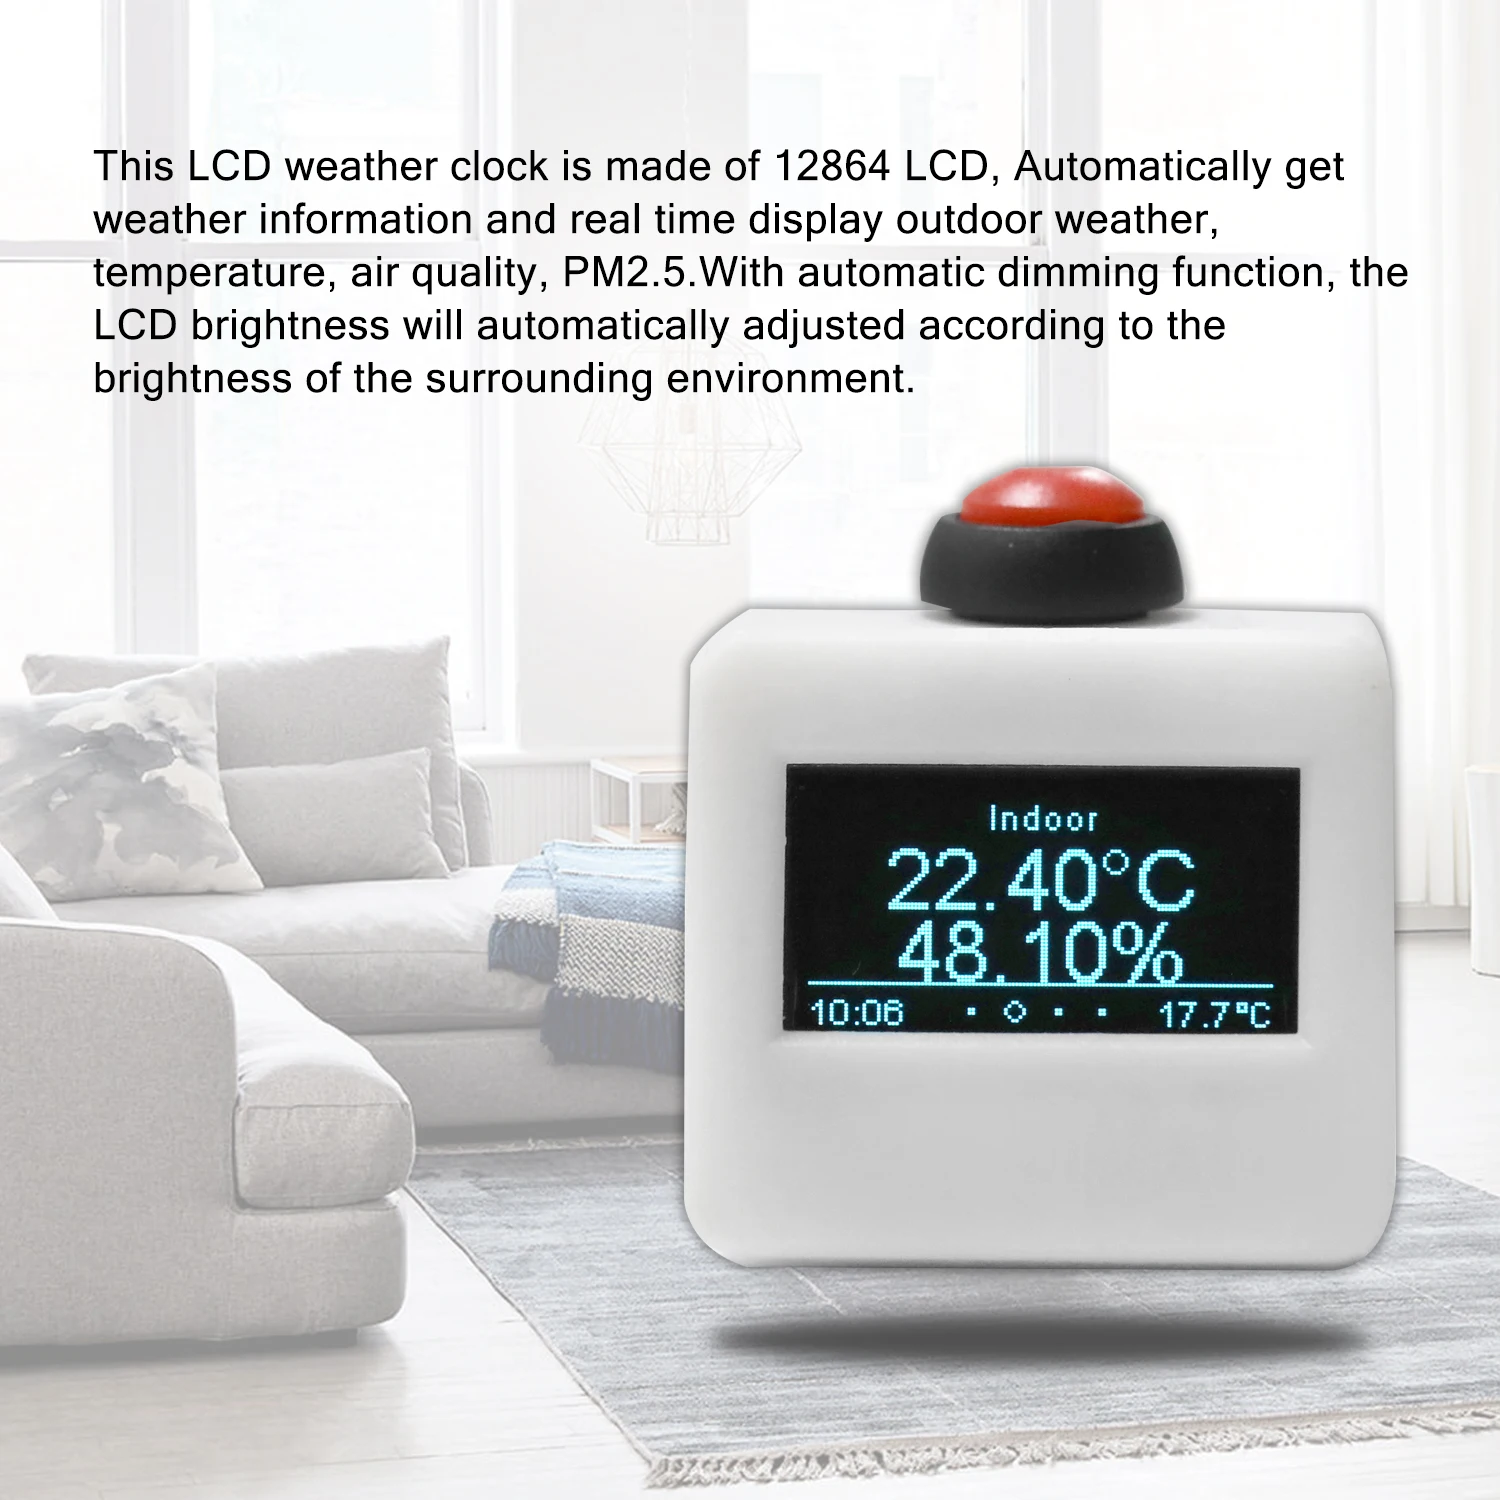 Бытовой Мини Размер Портативный влажность и температура ЖК-дисплей Wifi погодные часы с автоматической функцией калибровки времени